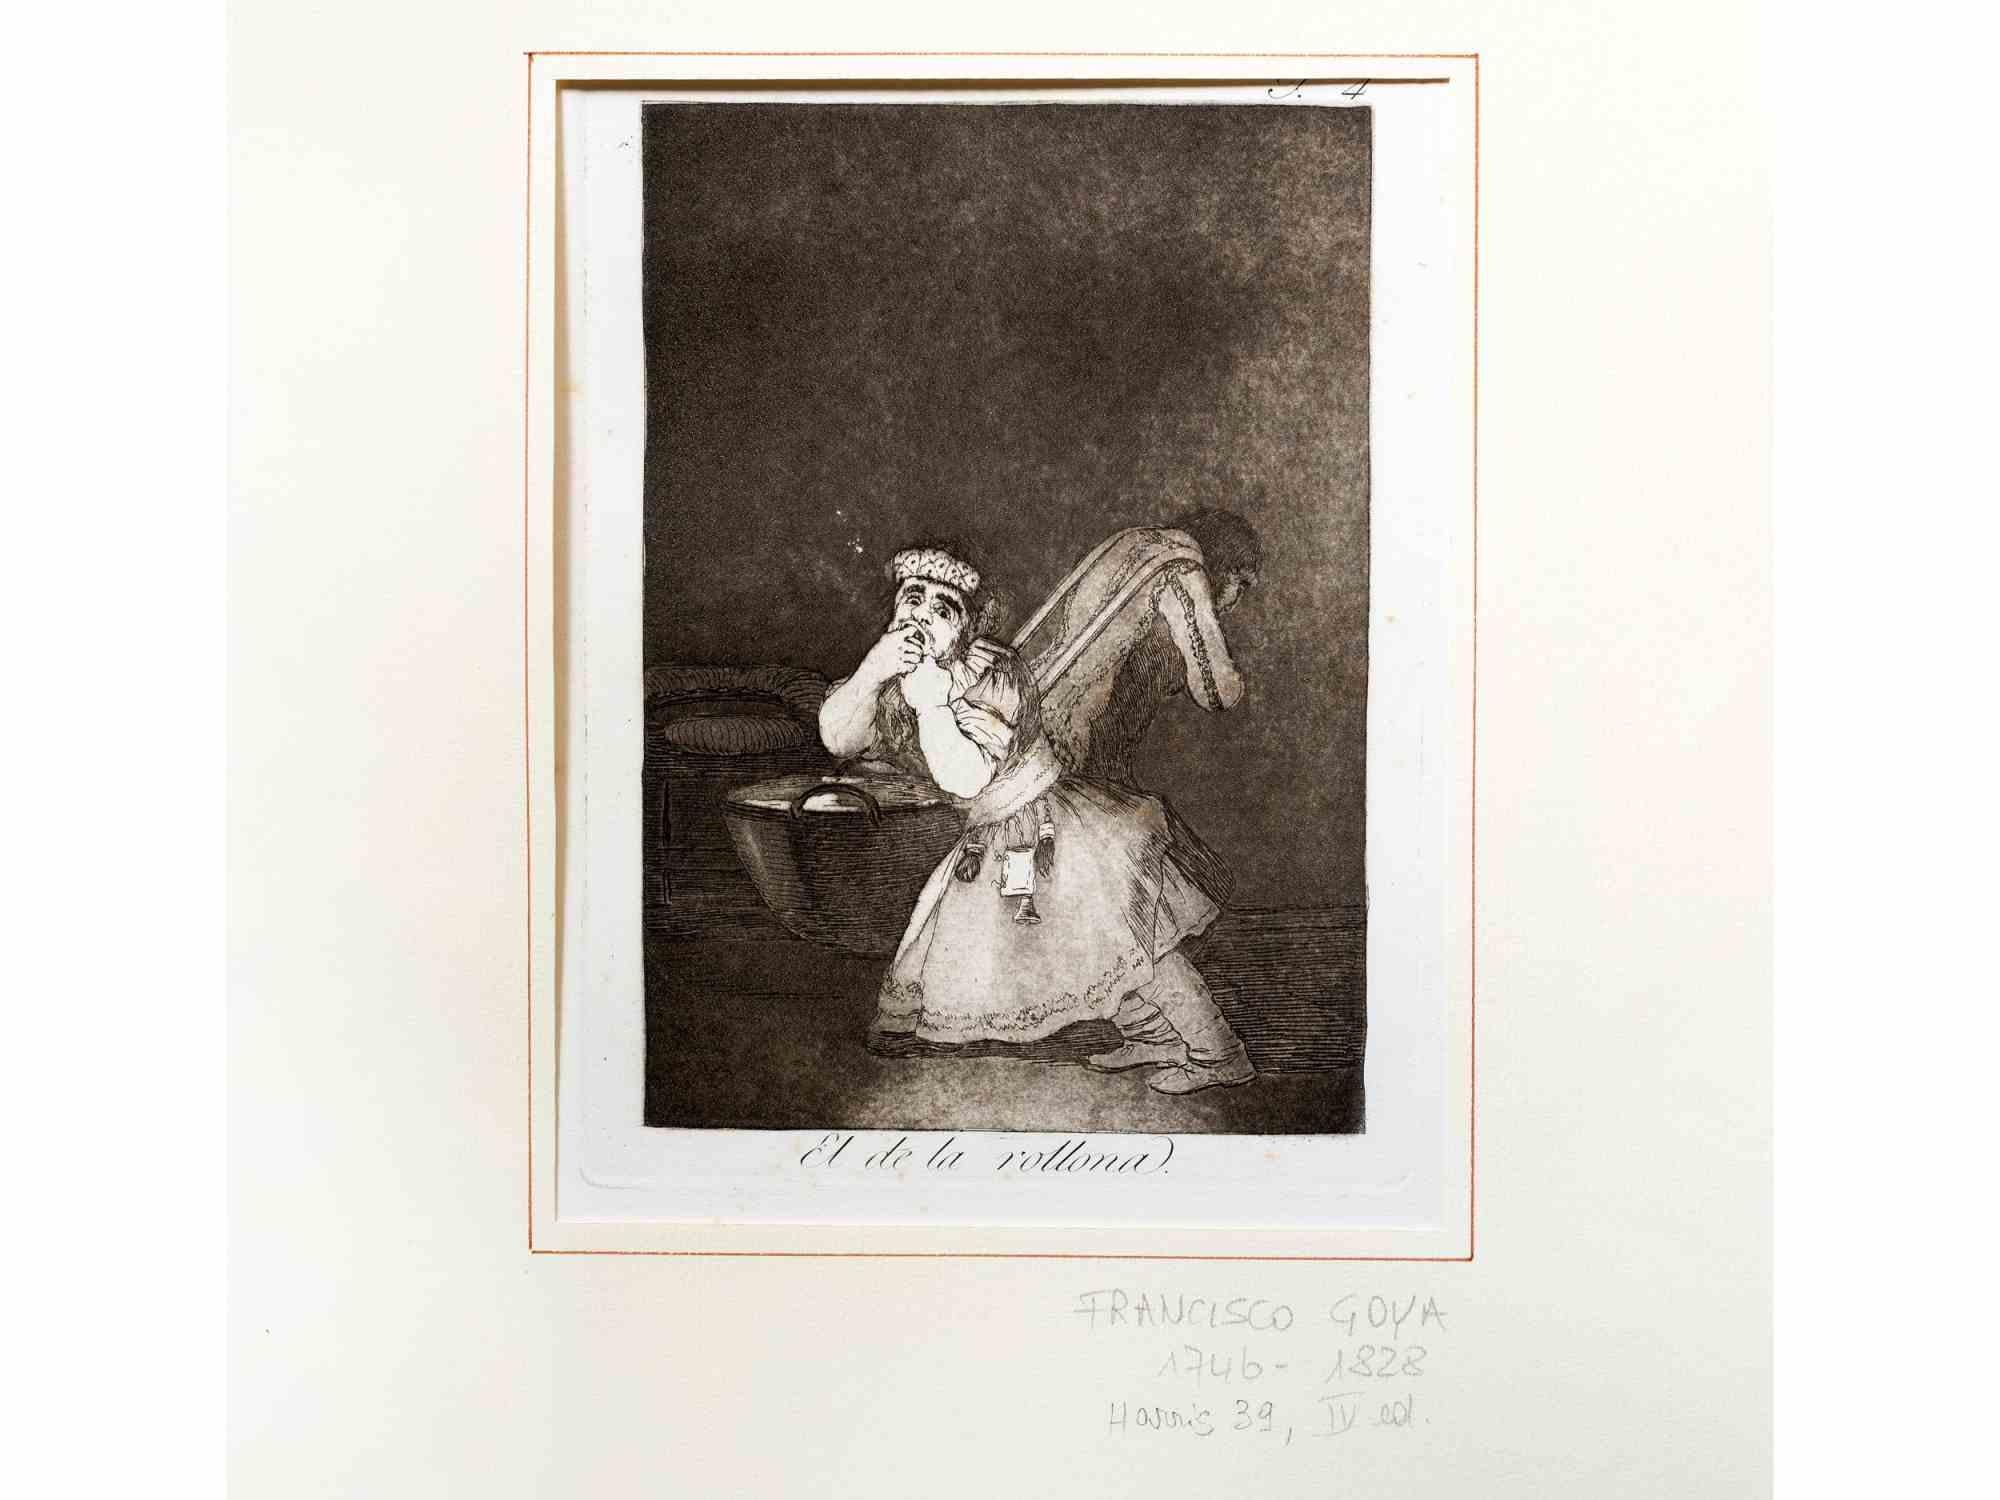 El de la Rollona ist ein modernes Kunstwerk von Francisco Goya, das 1878 in vierter Auflage von der Calcografia Nacional veröffentlicht wurde.

Schwarz-Weiß-Radierung und brünierte Aquatinta.

Abmessungen: Bild 20 x 15 cm Blatt 29 x 21 cm.

Bei dem